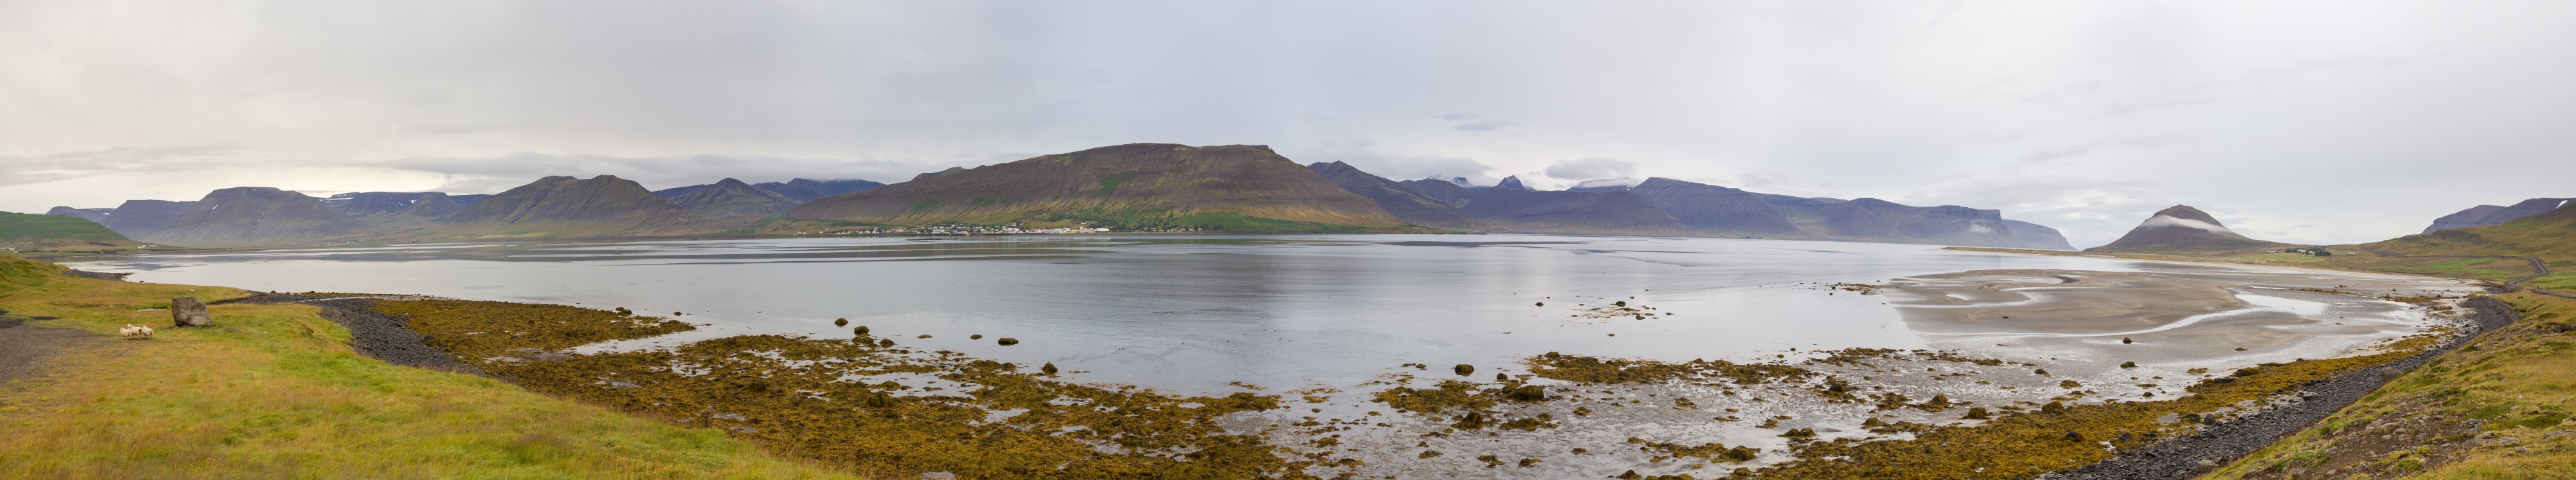 Dýrafjörður, Vestfirðir, Islandia, 2014-08-15, DD 007 PAN